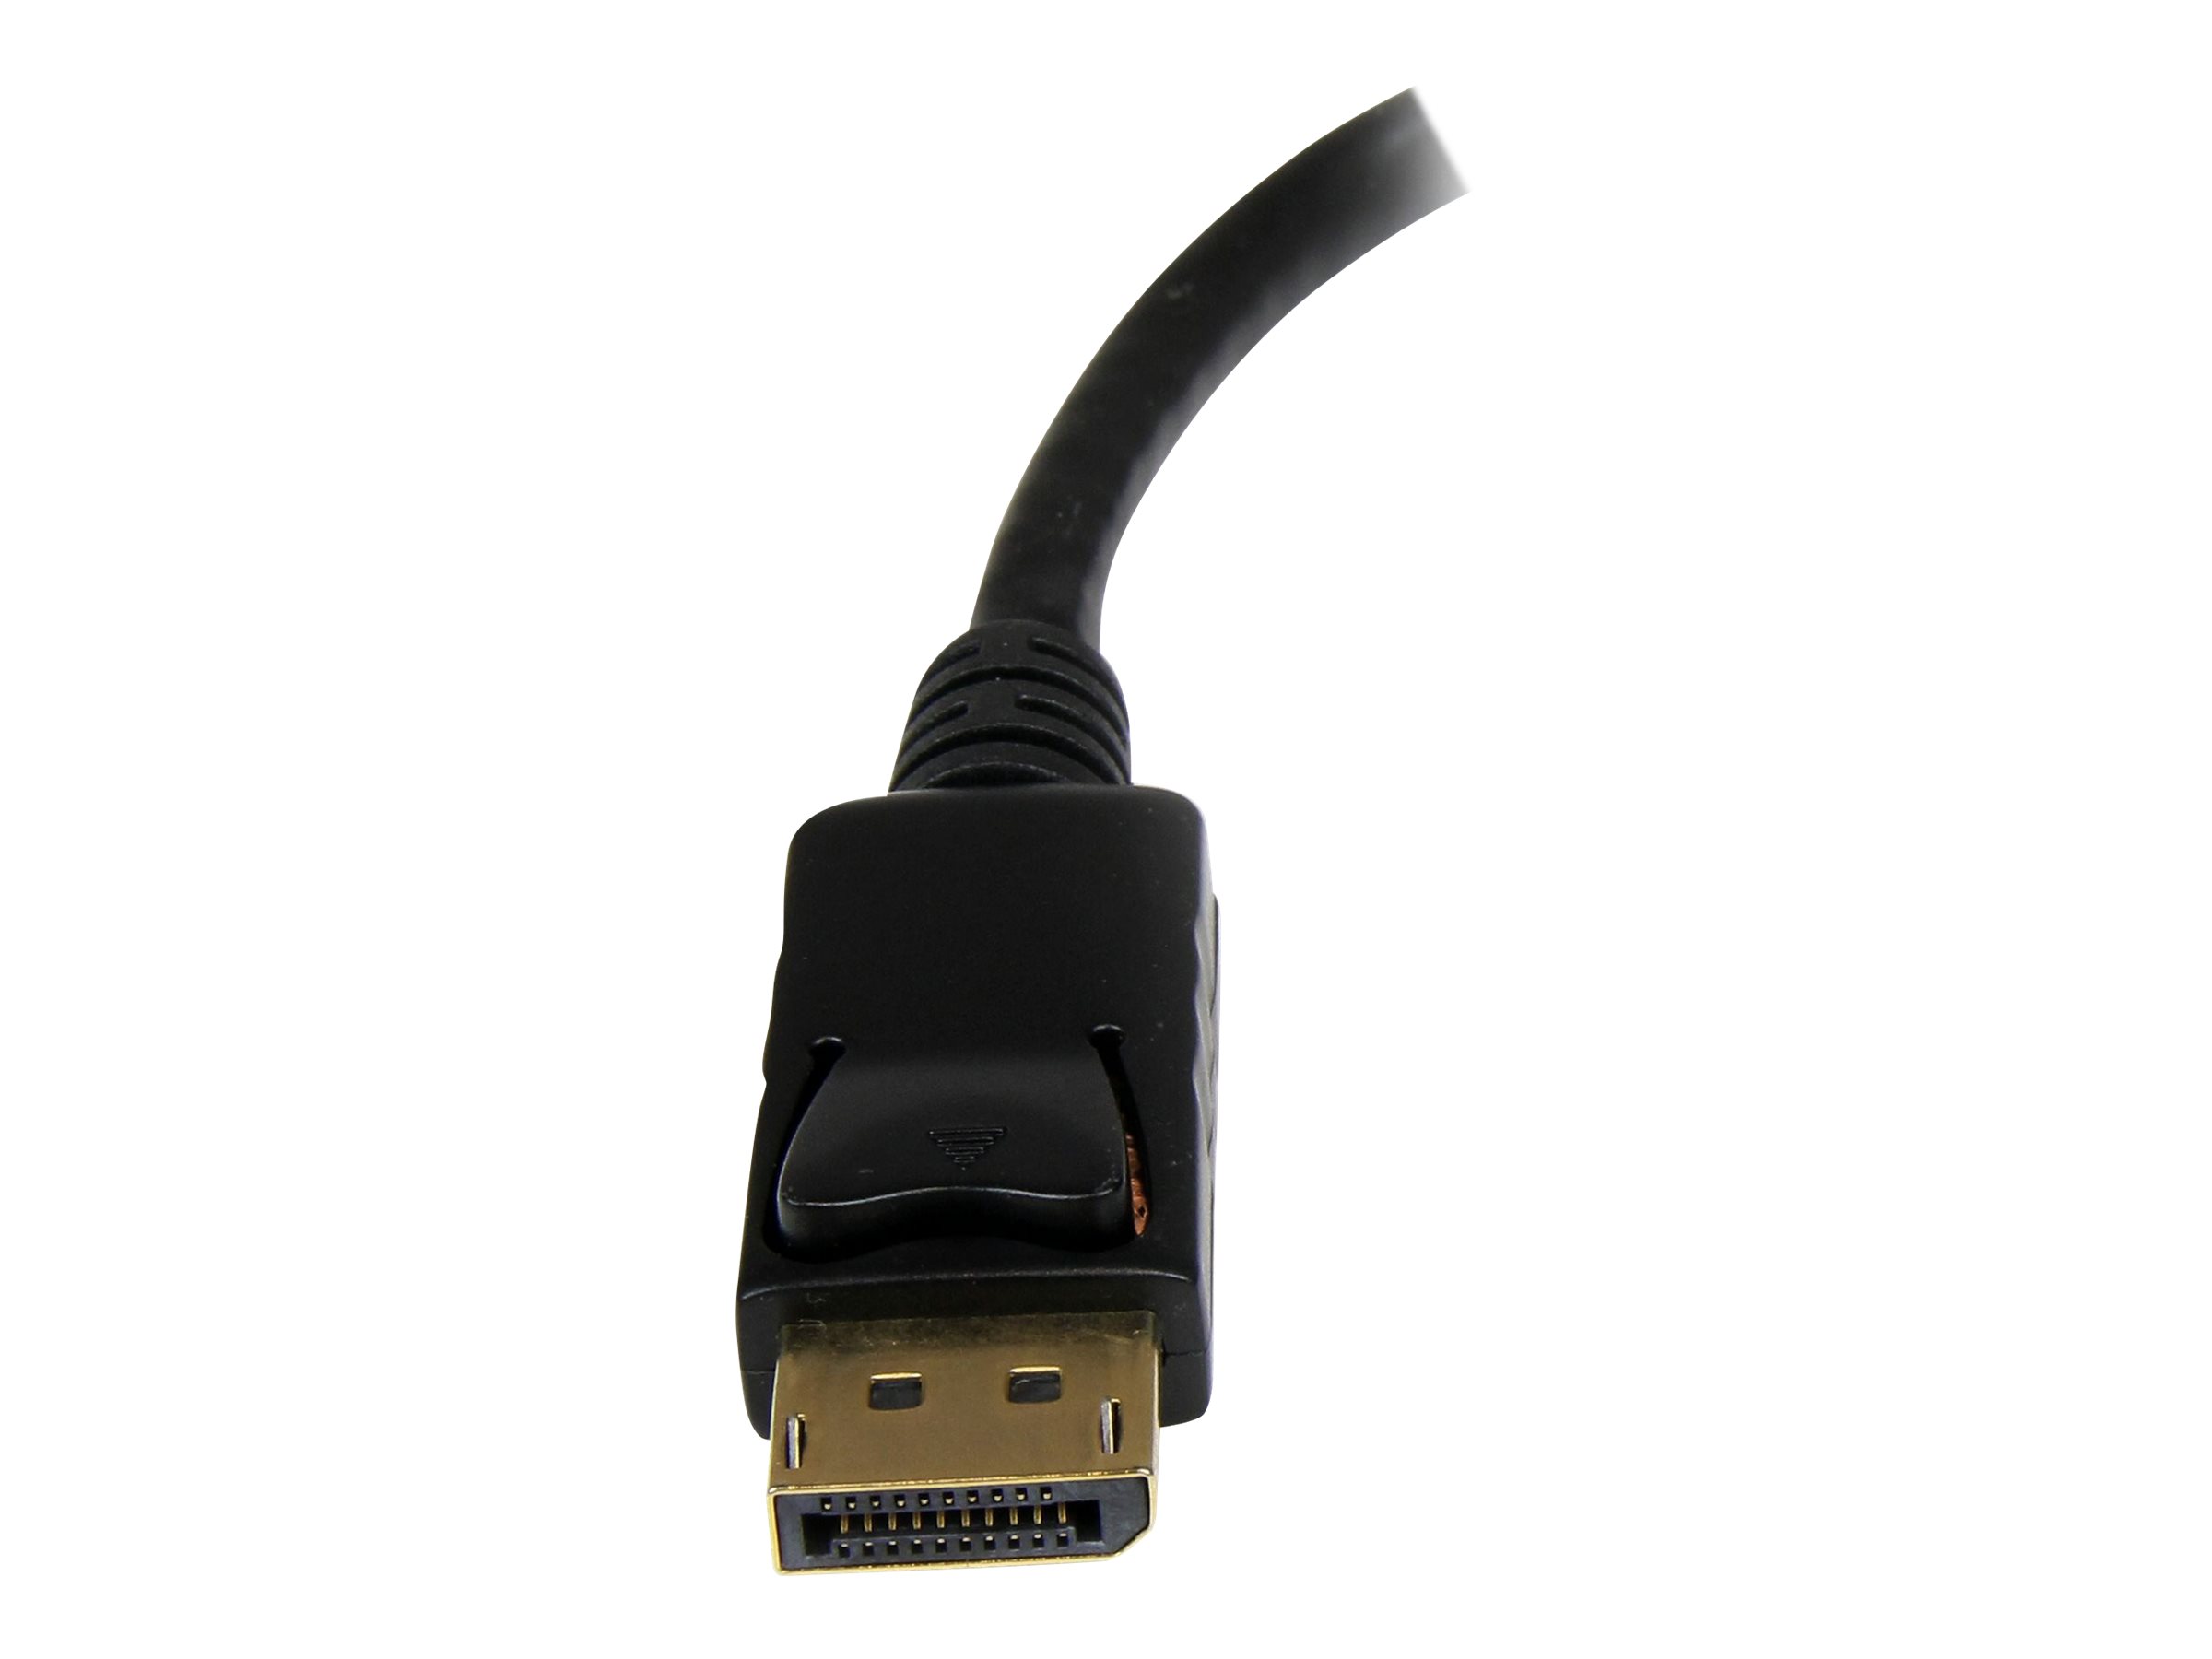 StarTech.com Adaptateur vidéo DisplayPort vers HDMI - Convertisseur DP vers HDMI - Mâle / Femelle - 1920x1200 / 1080p - Noir - Adaptateur vidéo - DisplayPort mâle pour HDMI femelle - 26.5 cm - pour P/N: DK30CH2DEP, DK30CH2DEPUE, DK30CHDDPPD, DK30CHDPPDUE, MST14DP123DP, SV231QDPU34K - DP2HDMI2 - Accessoires pour téléviseurs